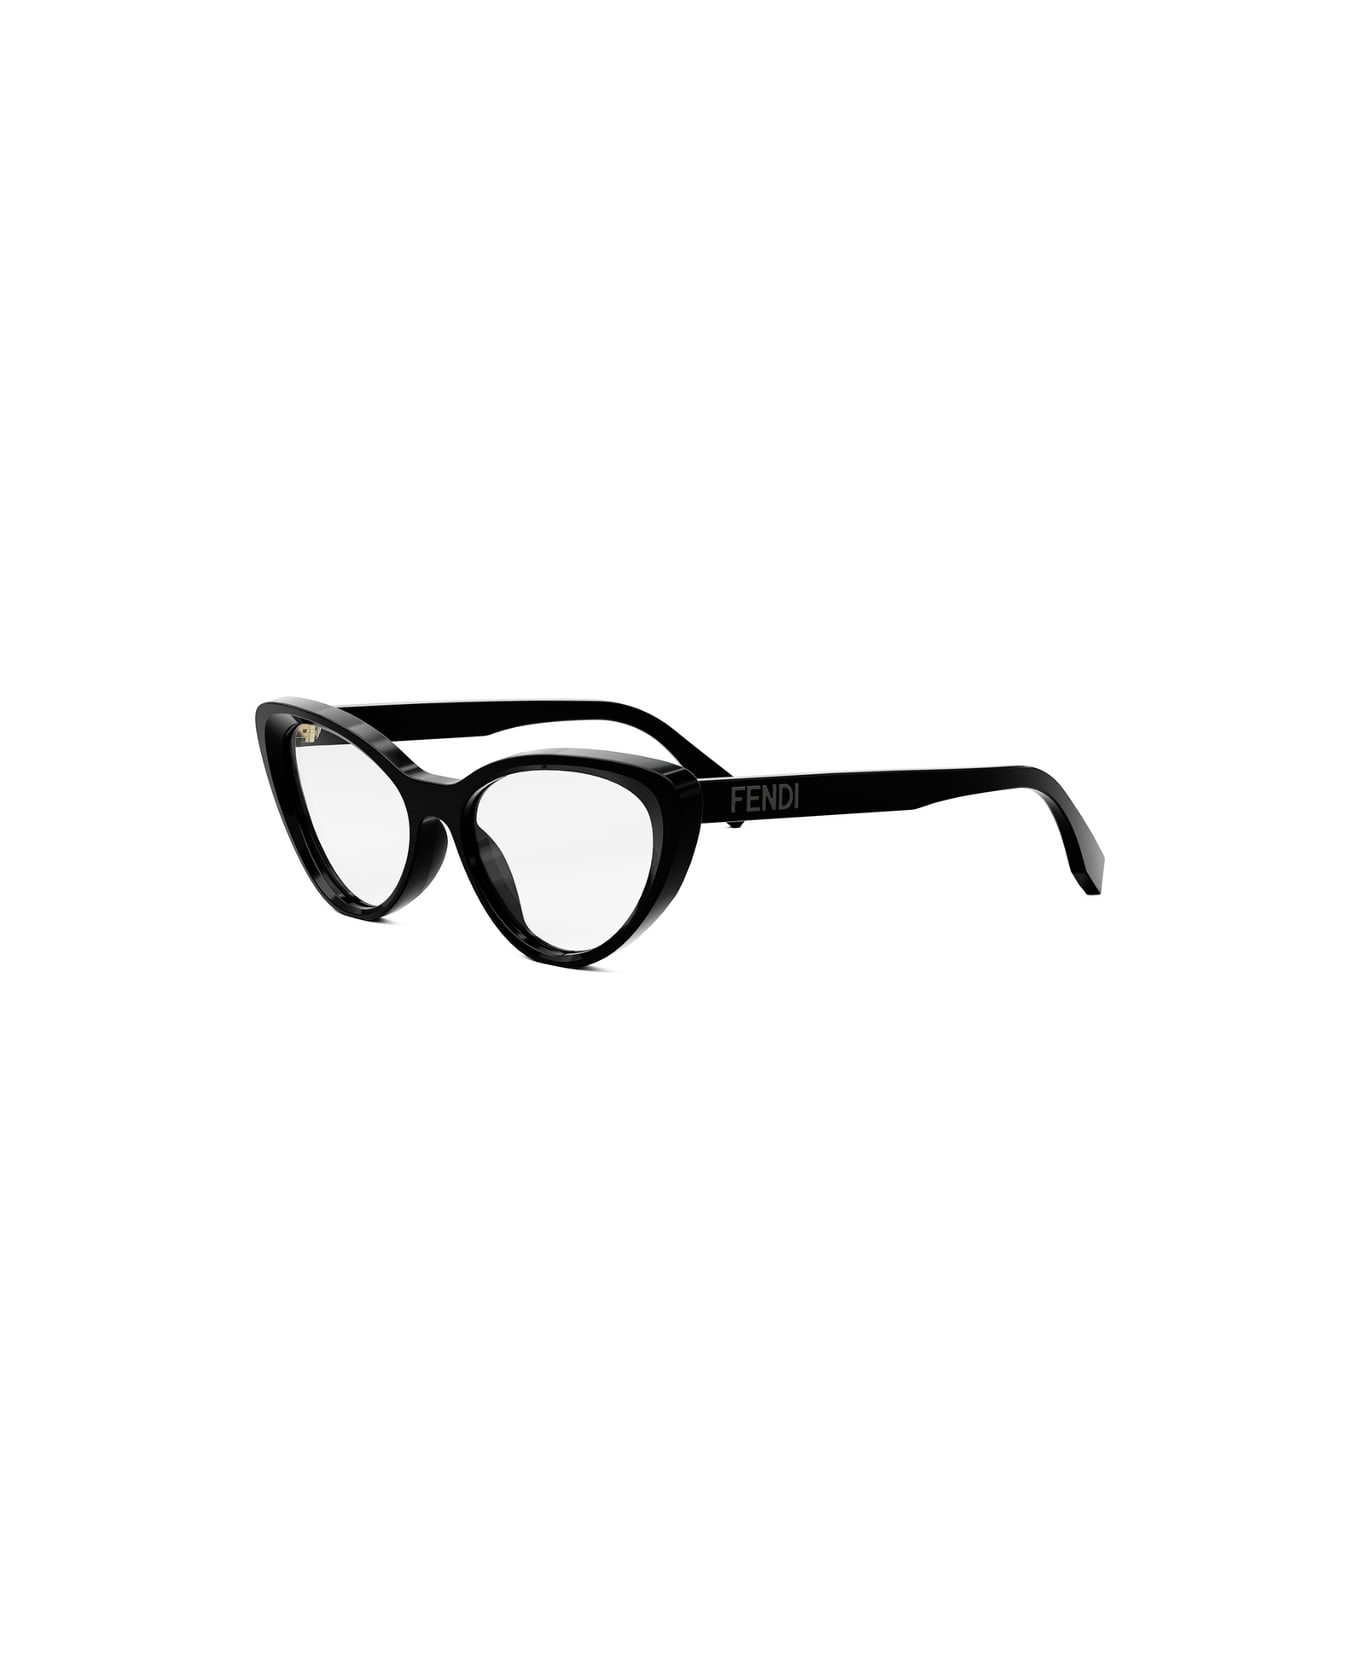 Fendi Eyewear FE50075i 001 Glasses - Nero アイウェア